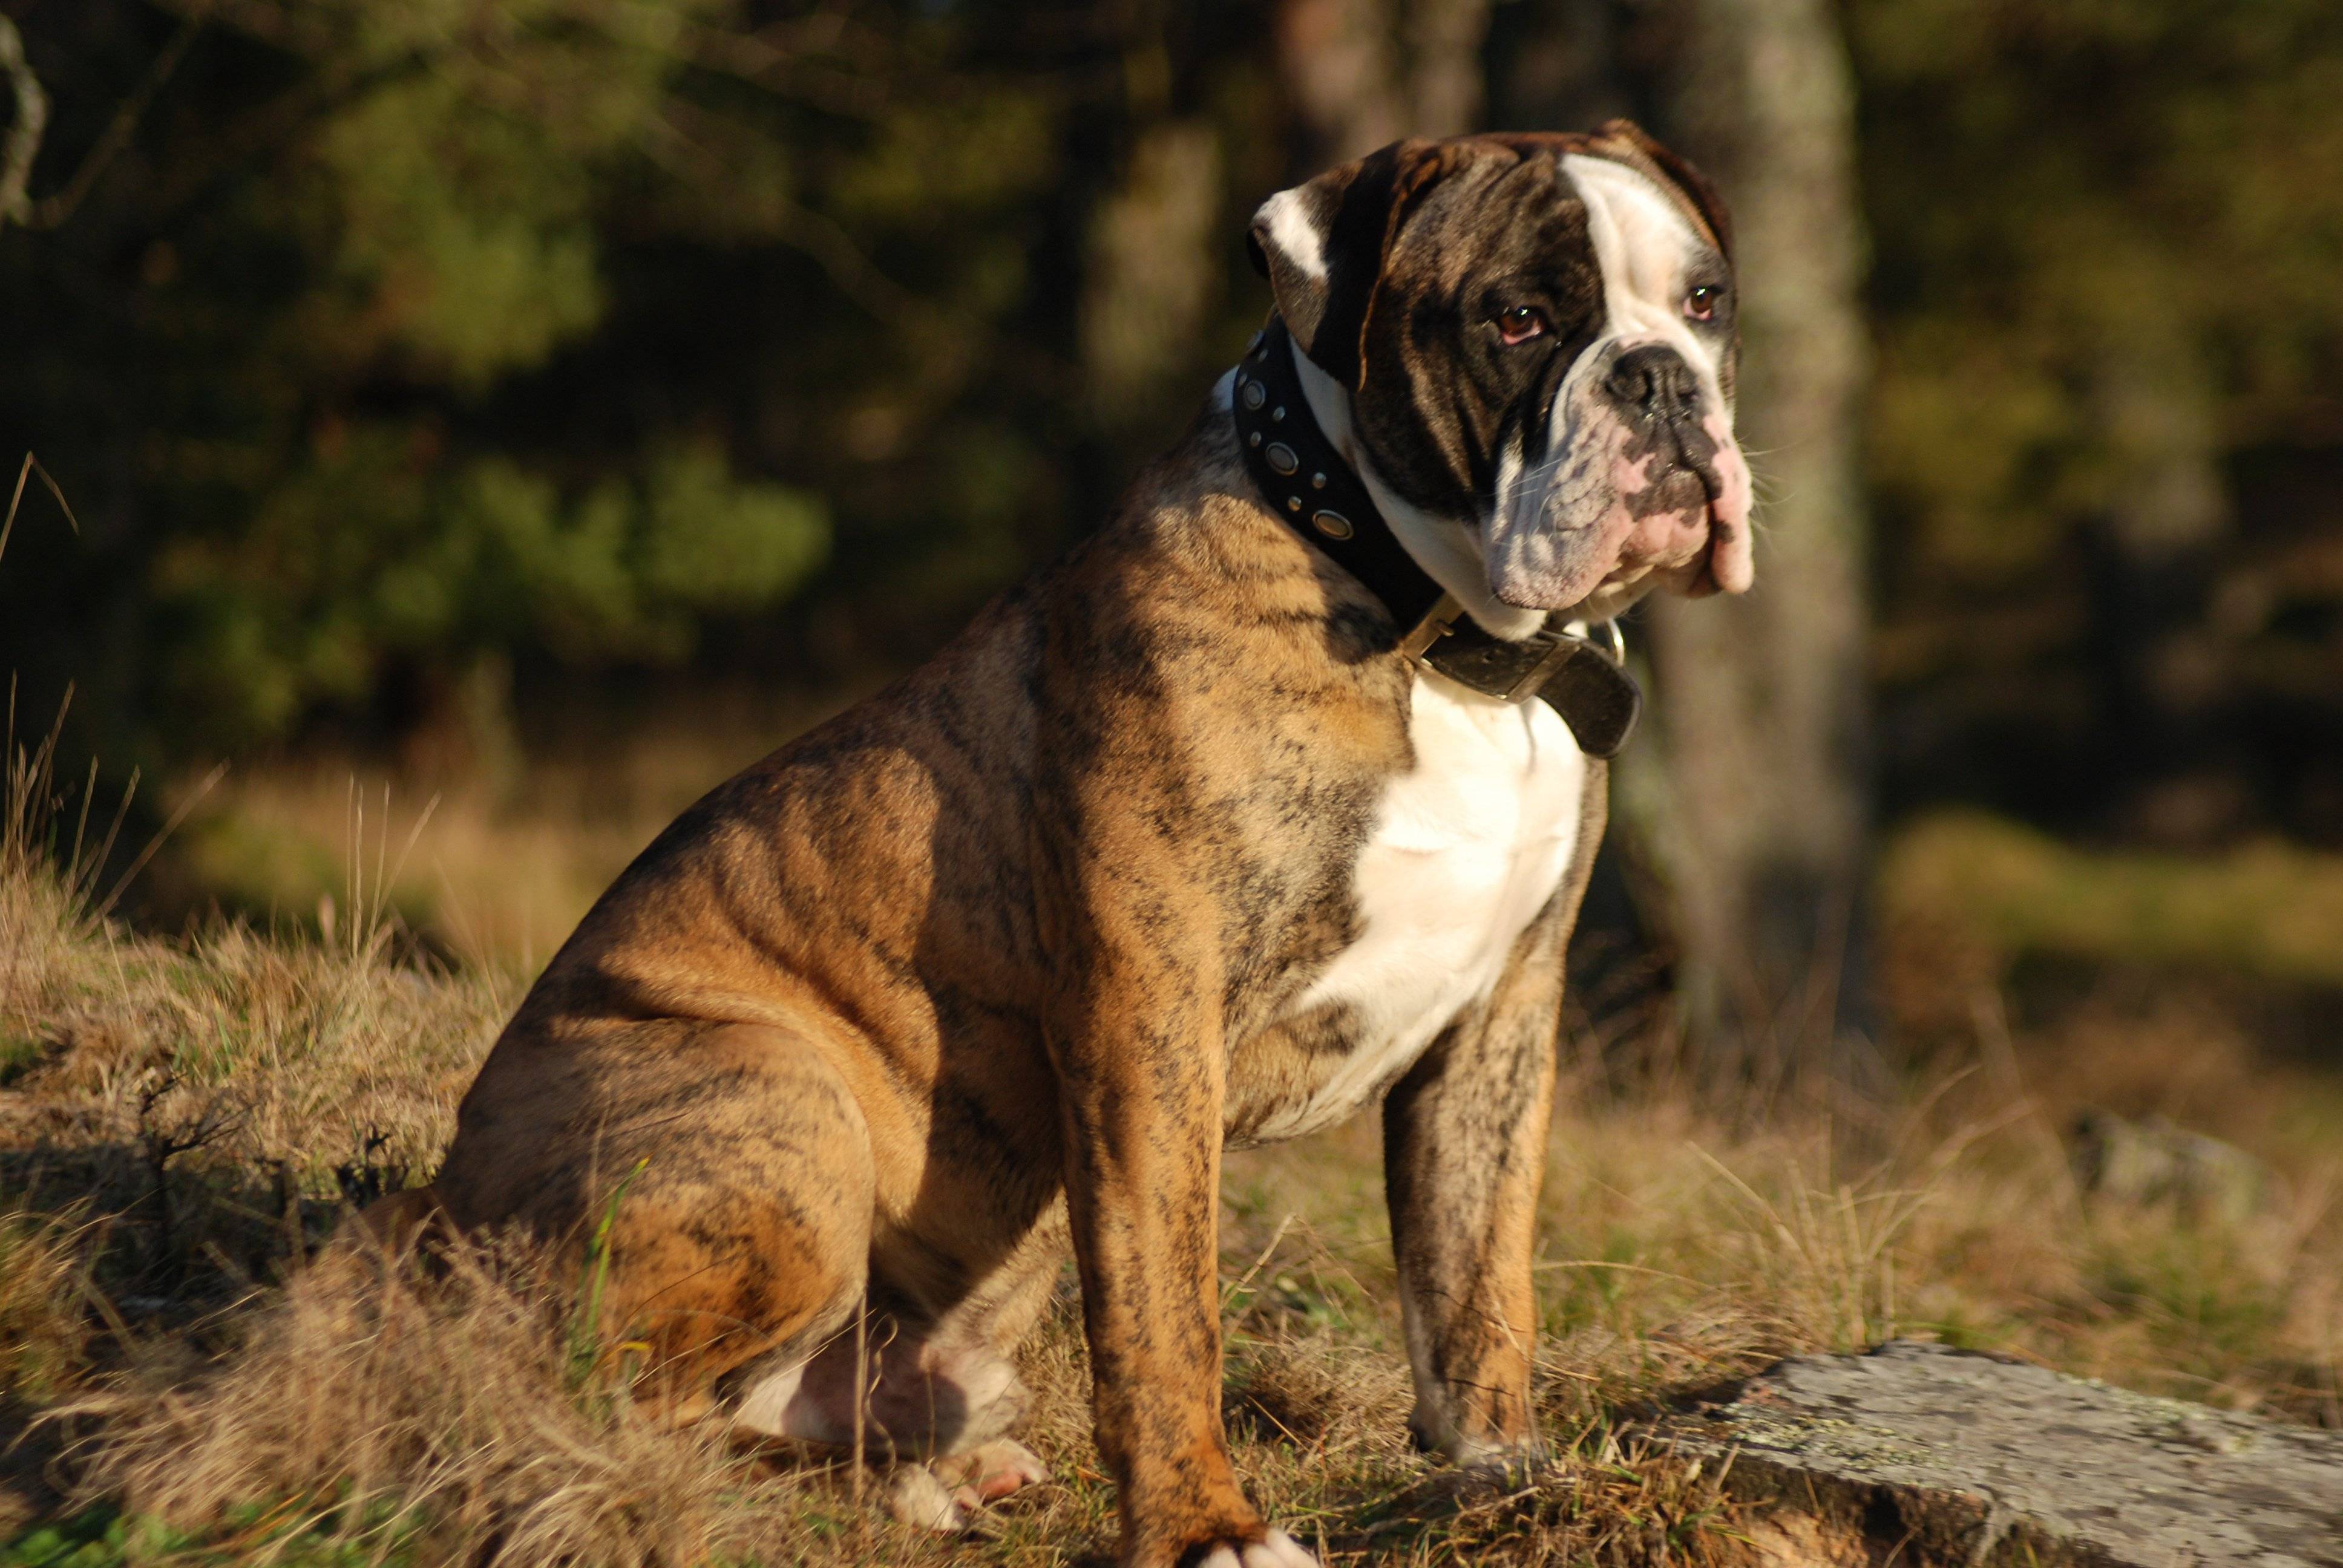 Английский бульдог: все о собаке, фото, описание породы, характер, цена